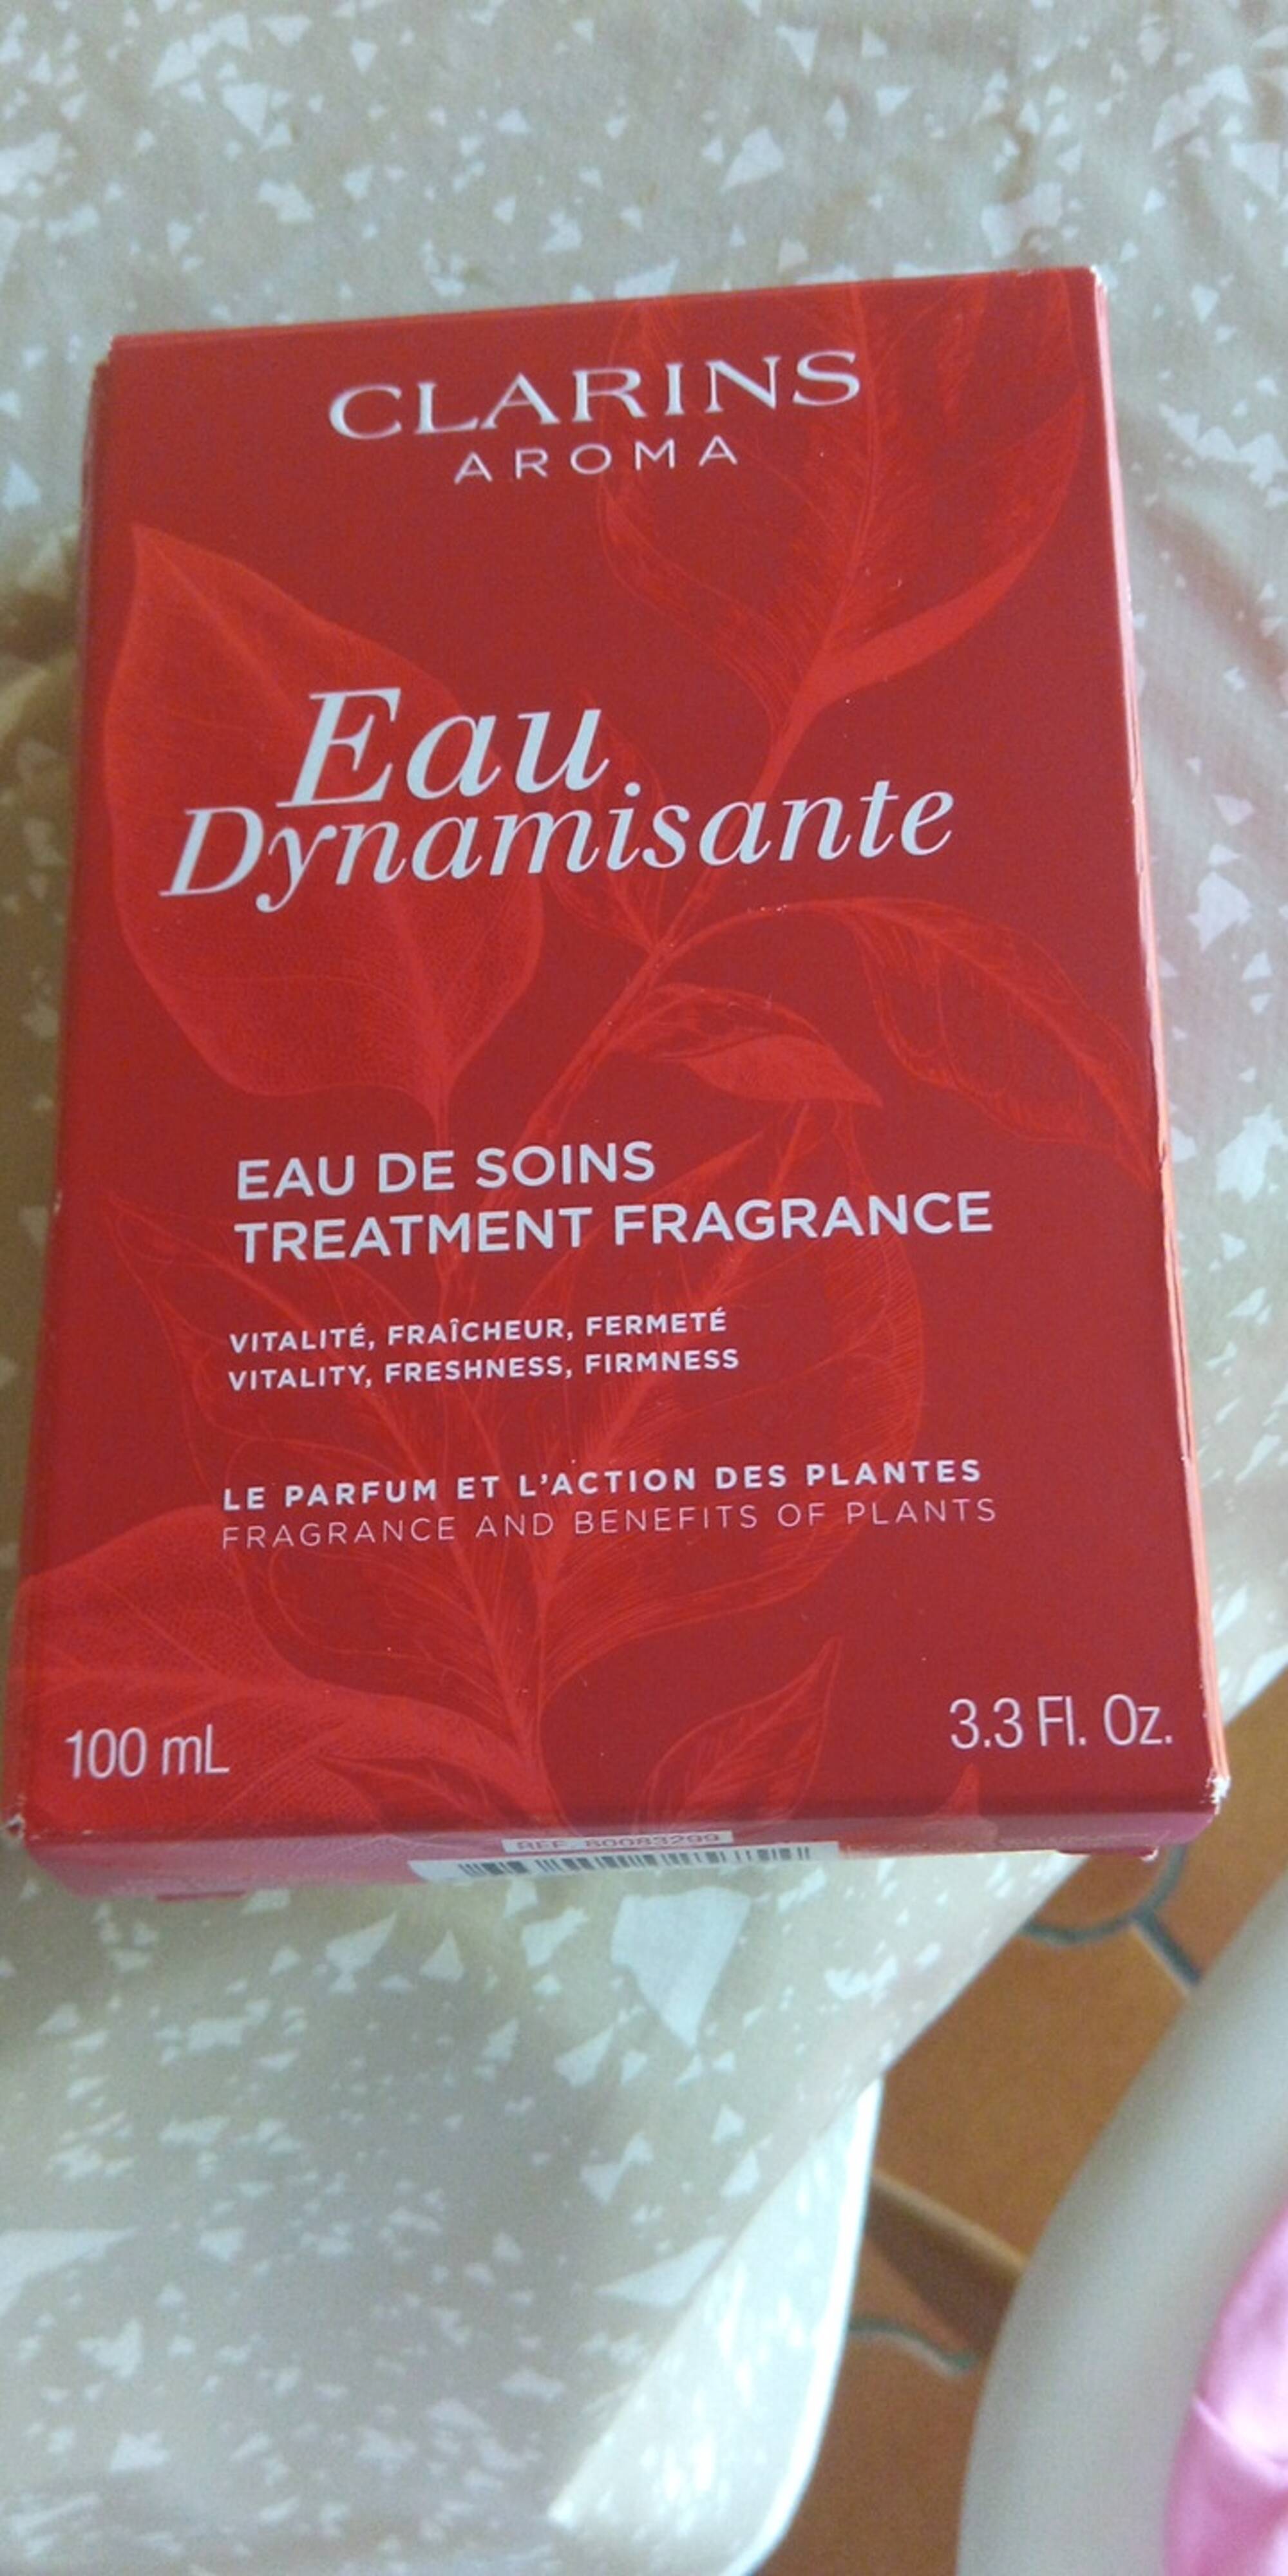 CLARINS - Eau dynamisante - Eau de soins treatment fragrance